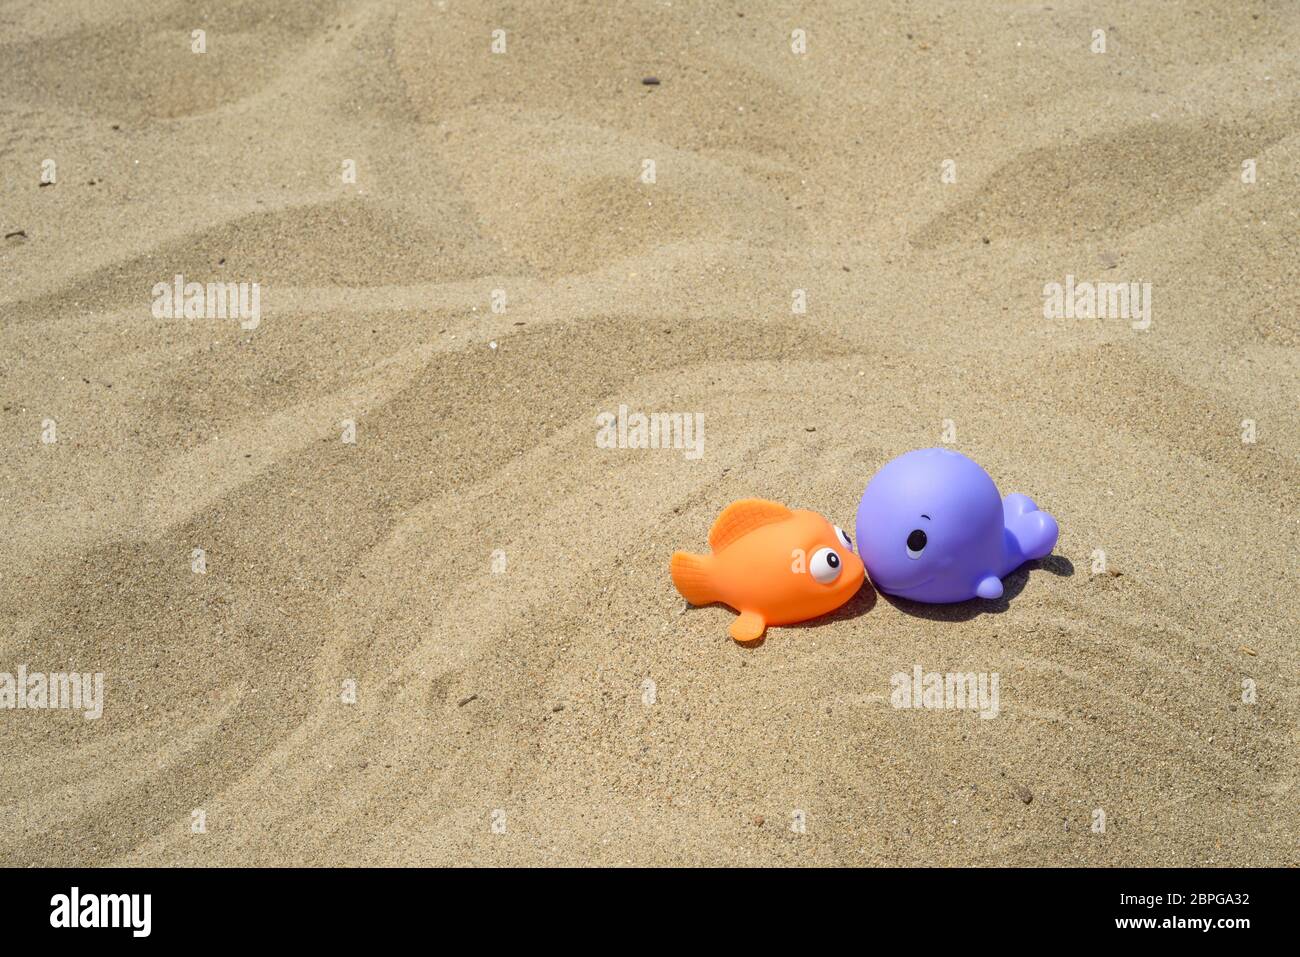 Divertente e colorato dei giocattoli di plastica sulla spiaggia Foto Stock